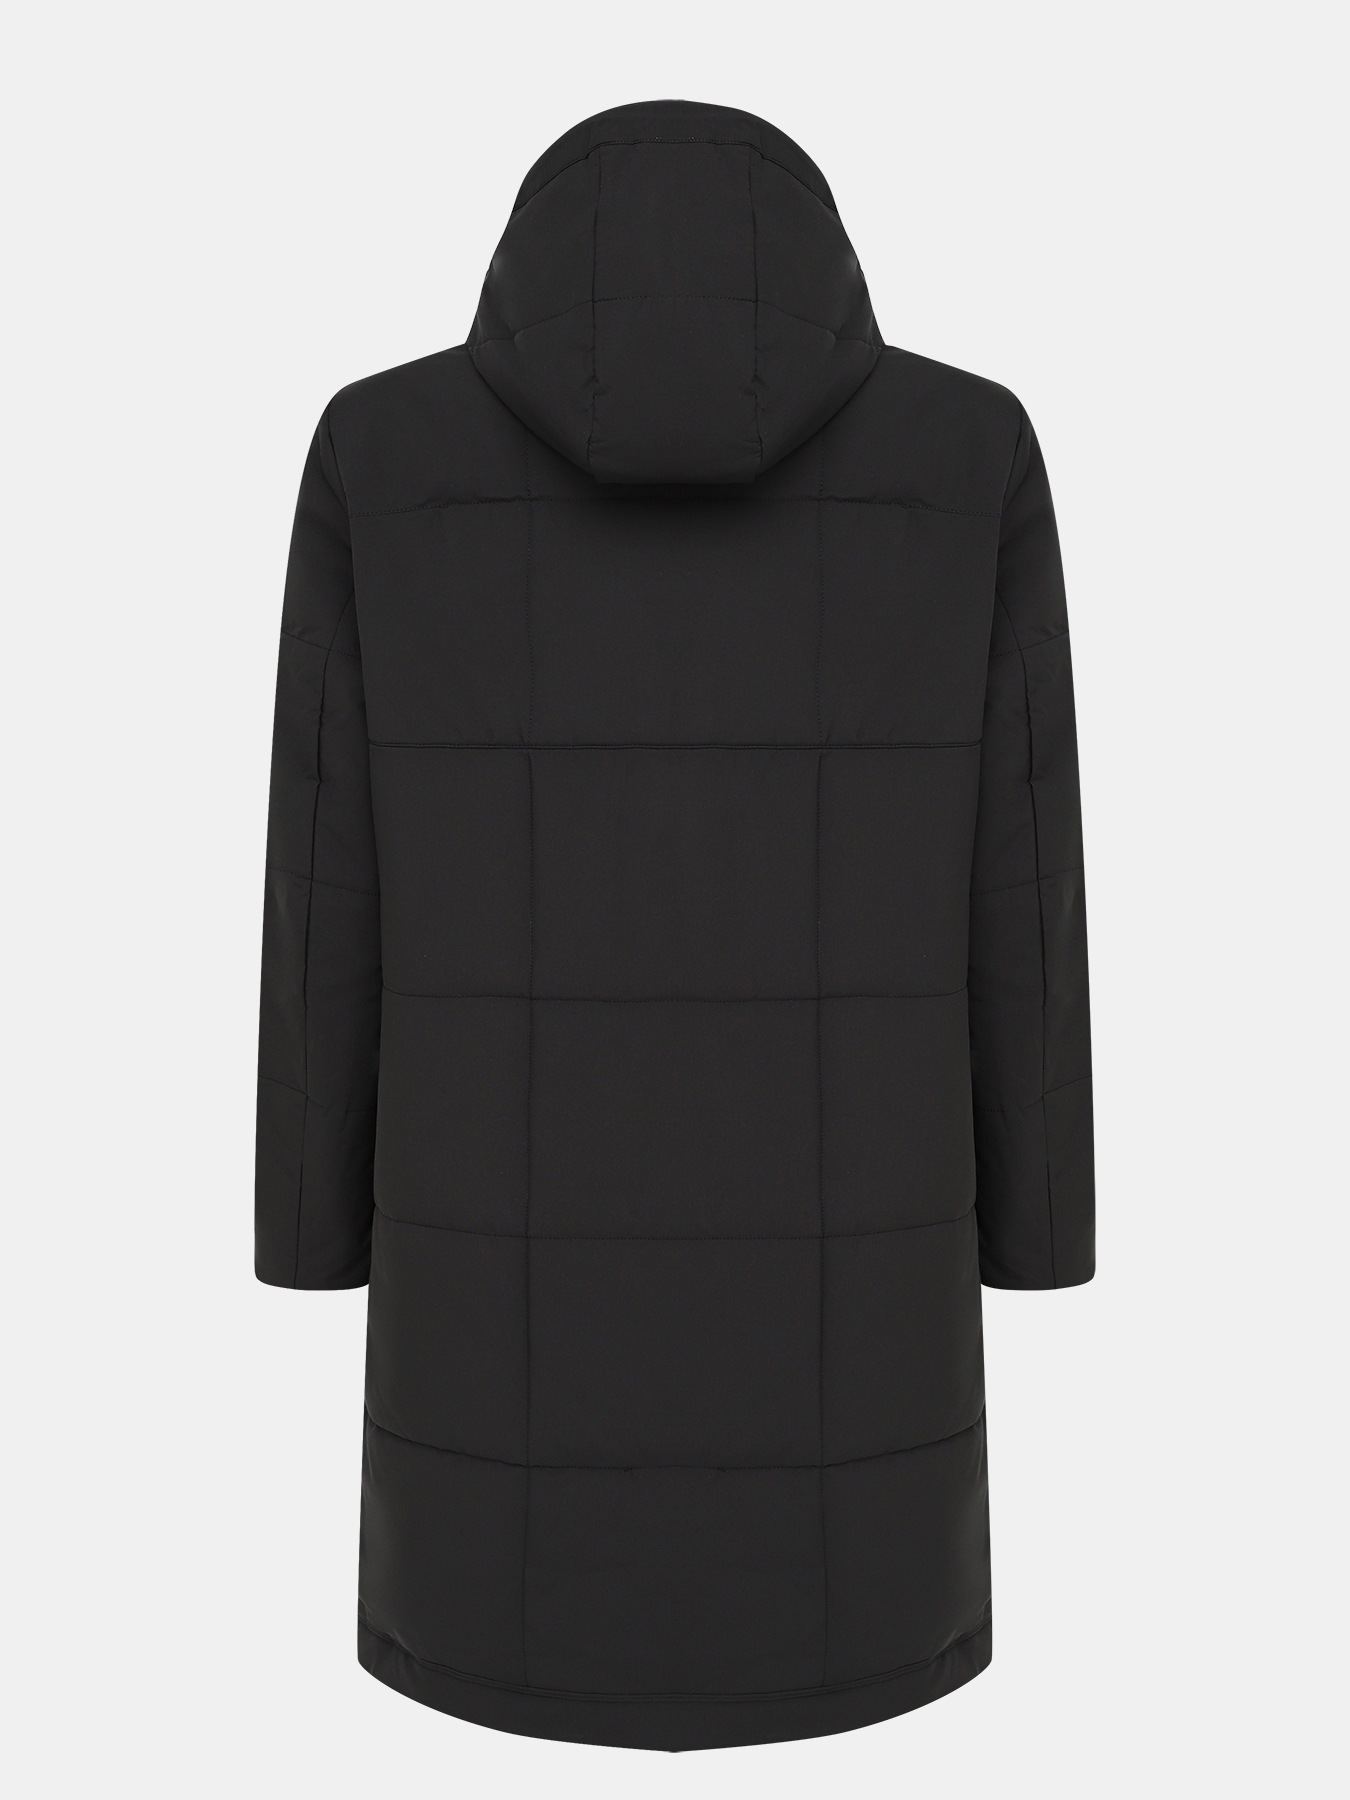 Удлиненная куртка Ritter 385246-027, цвет черный, размер 52 - фото 5